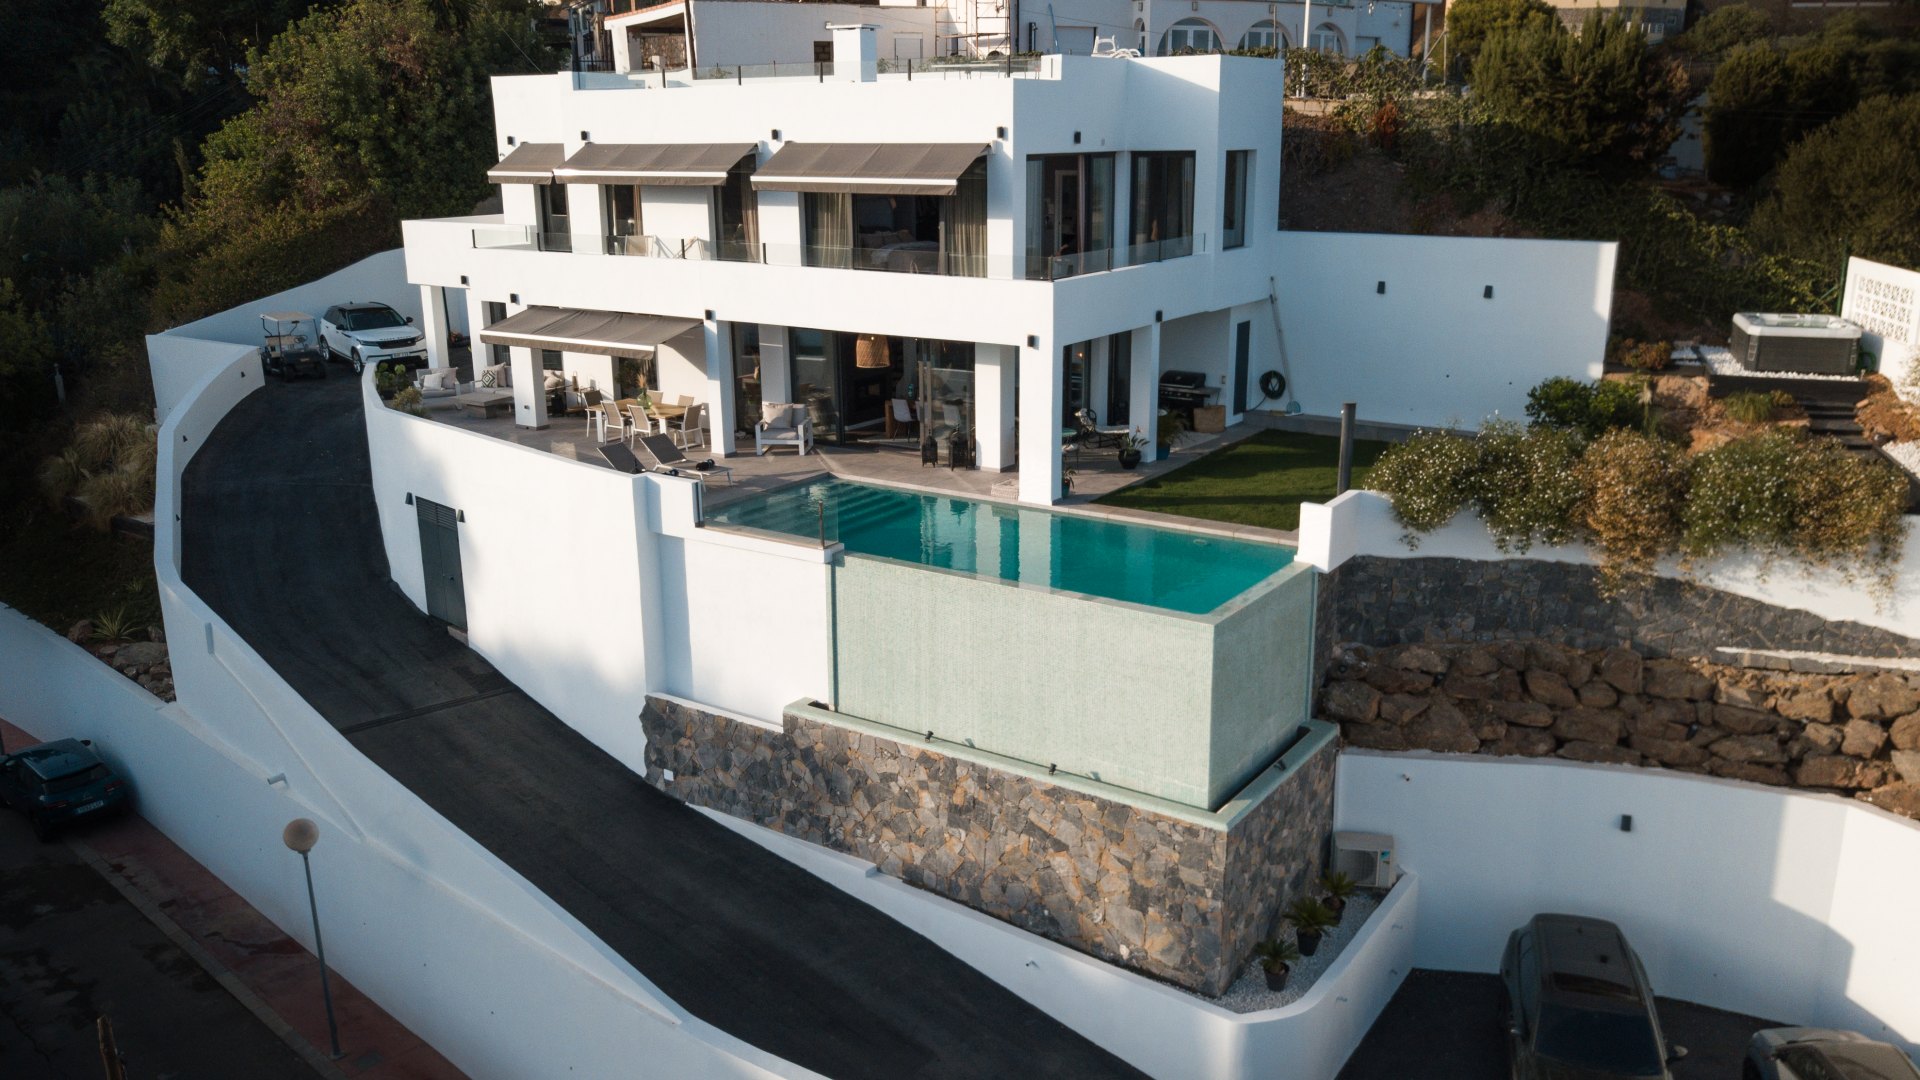 Amazingly refurbished villa, overlooking the ocean and El Toro